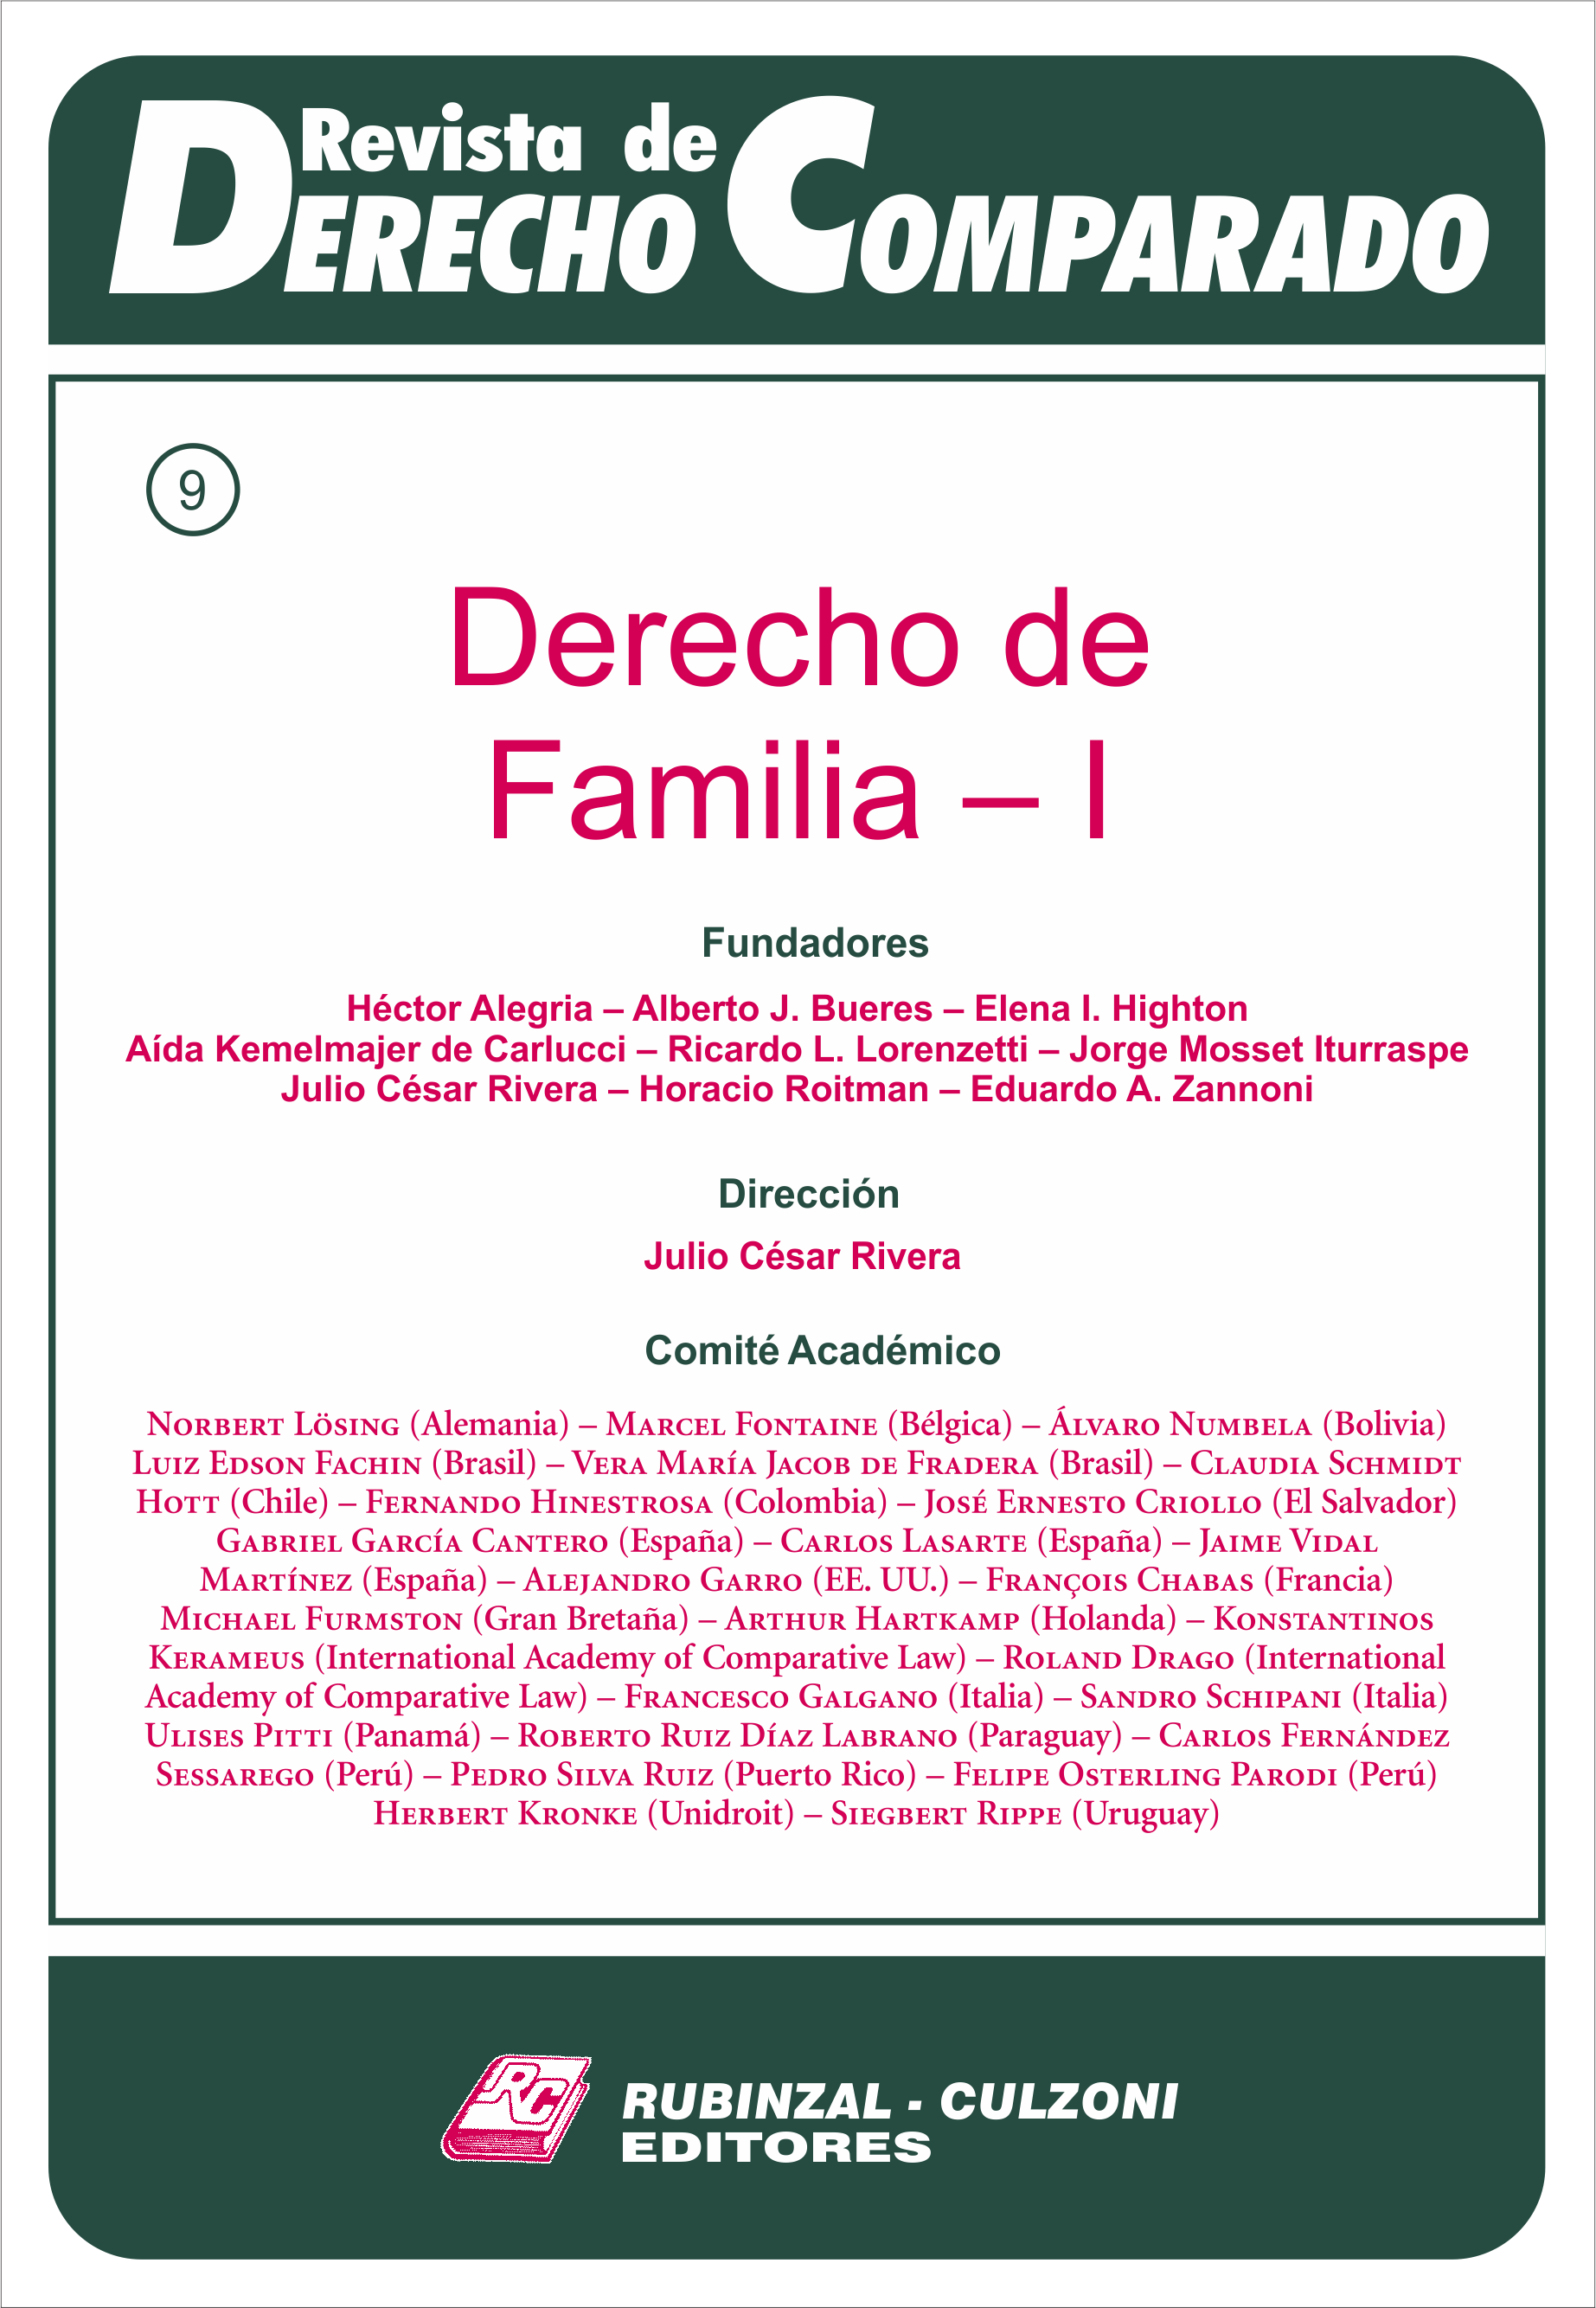 Revista de Derecho Comparado - Doctrina (Derecho de Familia - I).